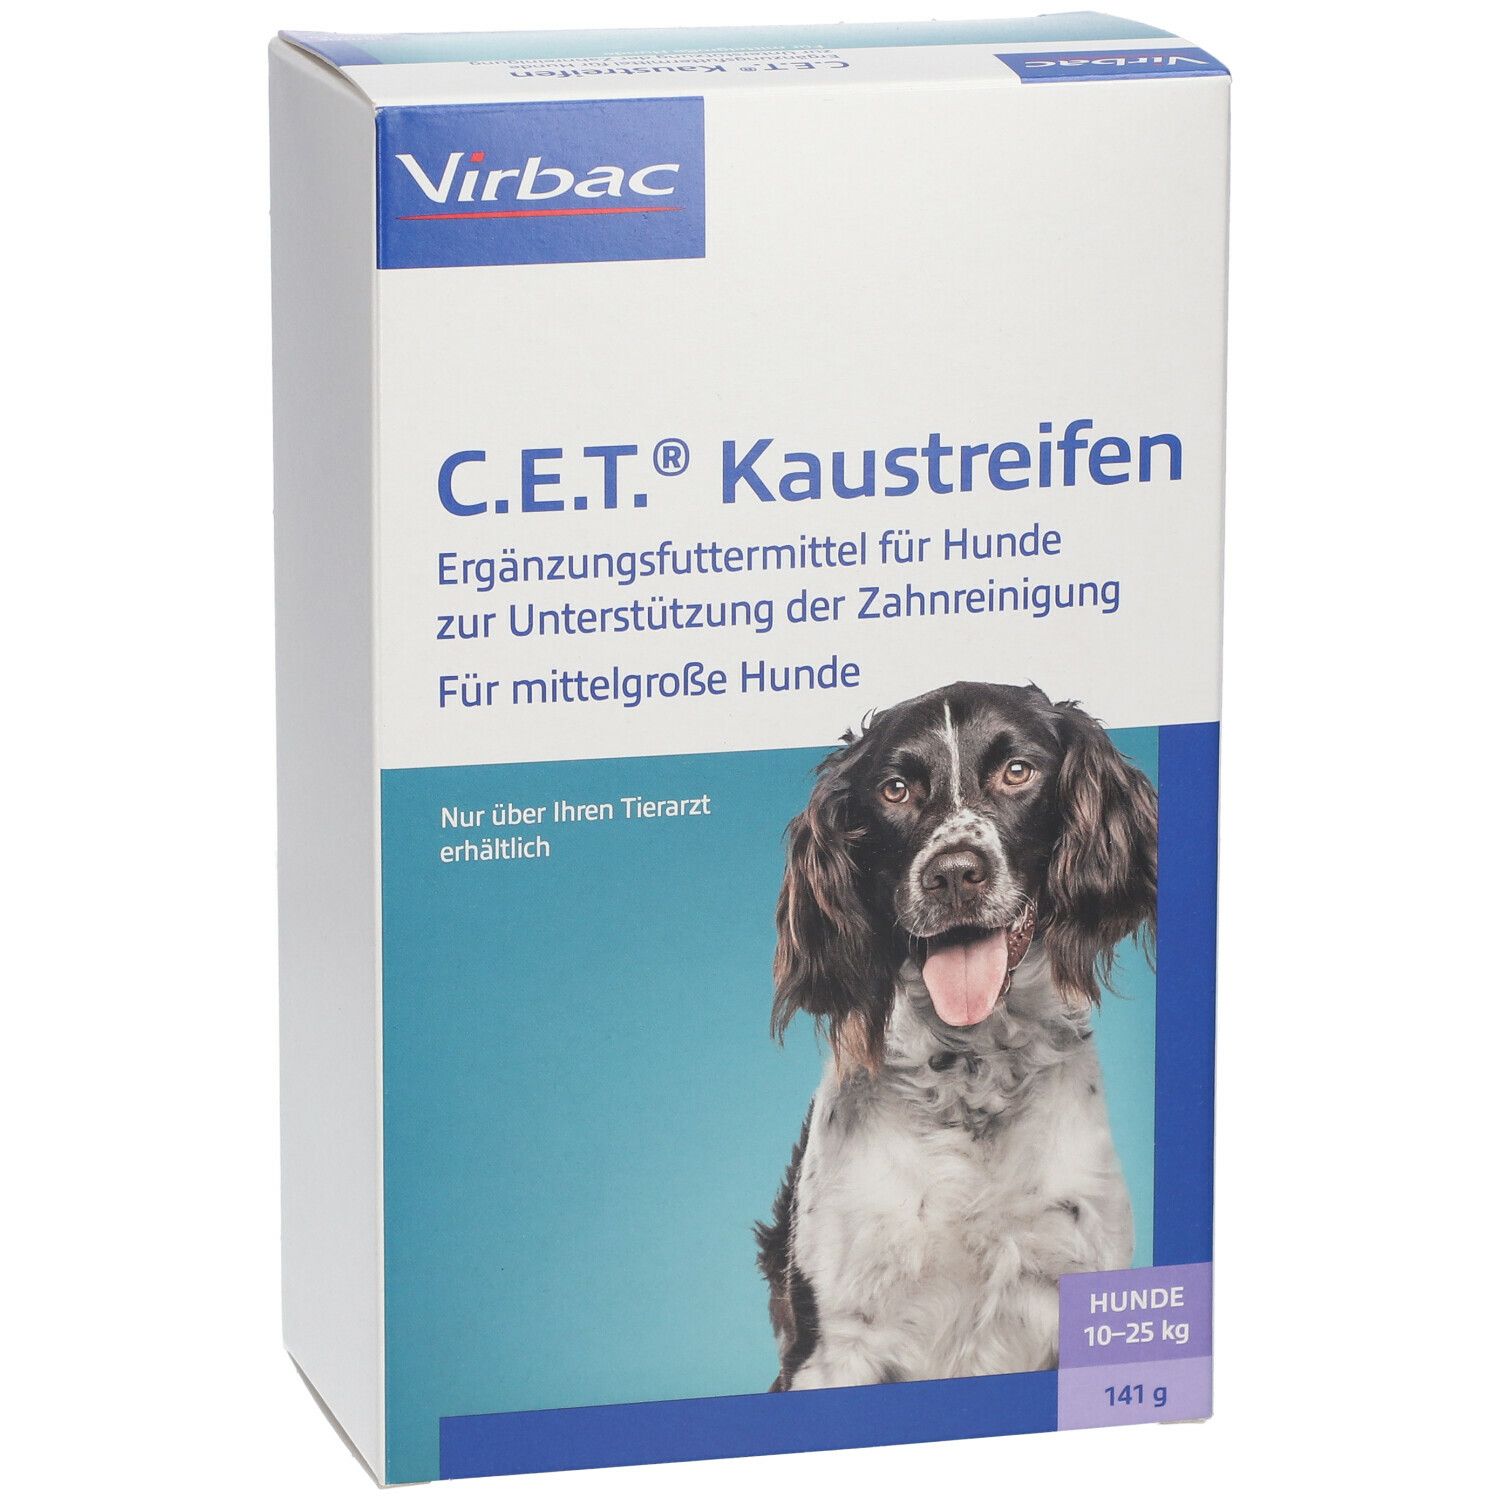 Virbac C.E.T.® Kaustreifen für mittelgroße Hunde